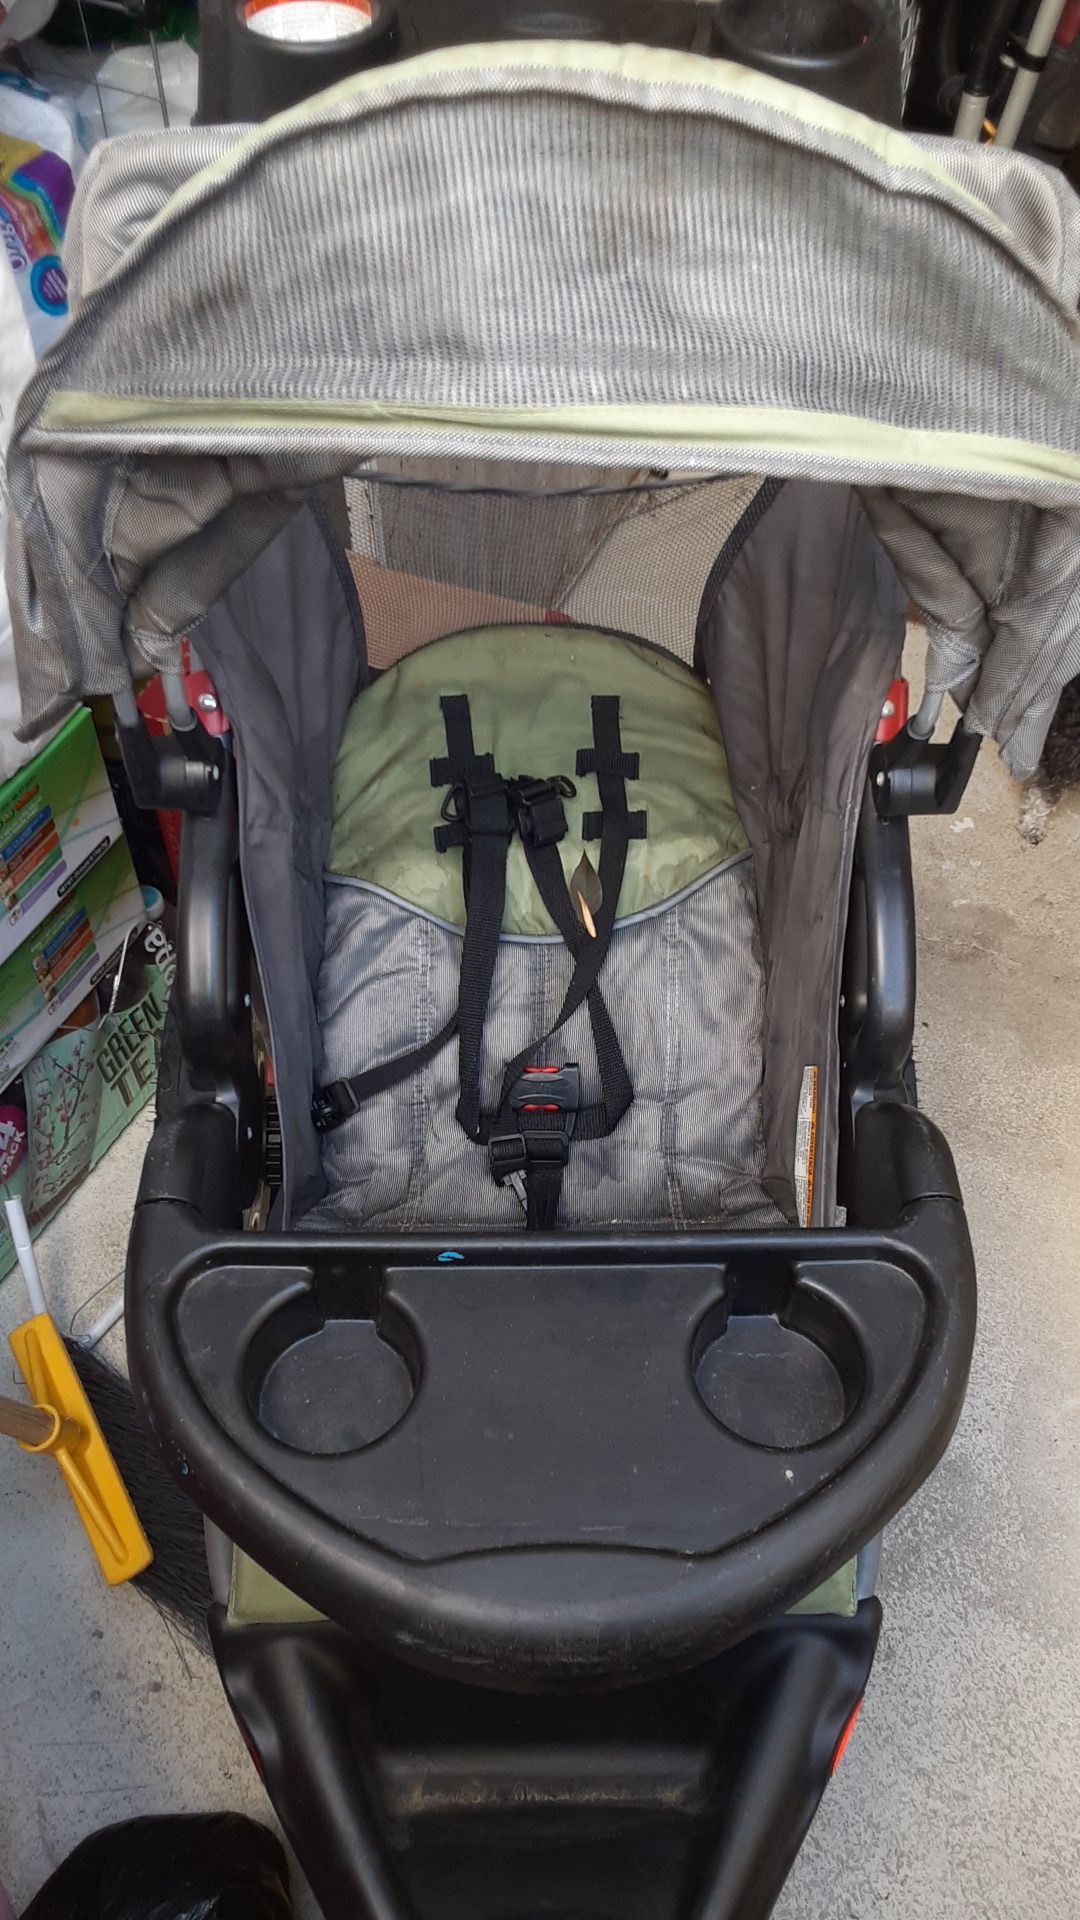 3 Wheel stroller